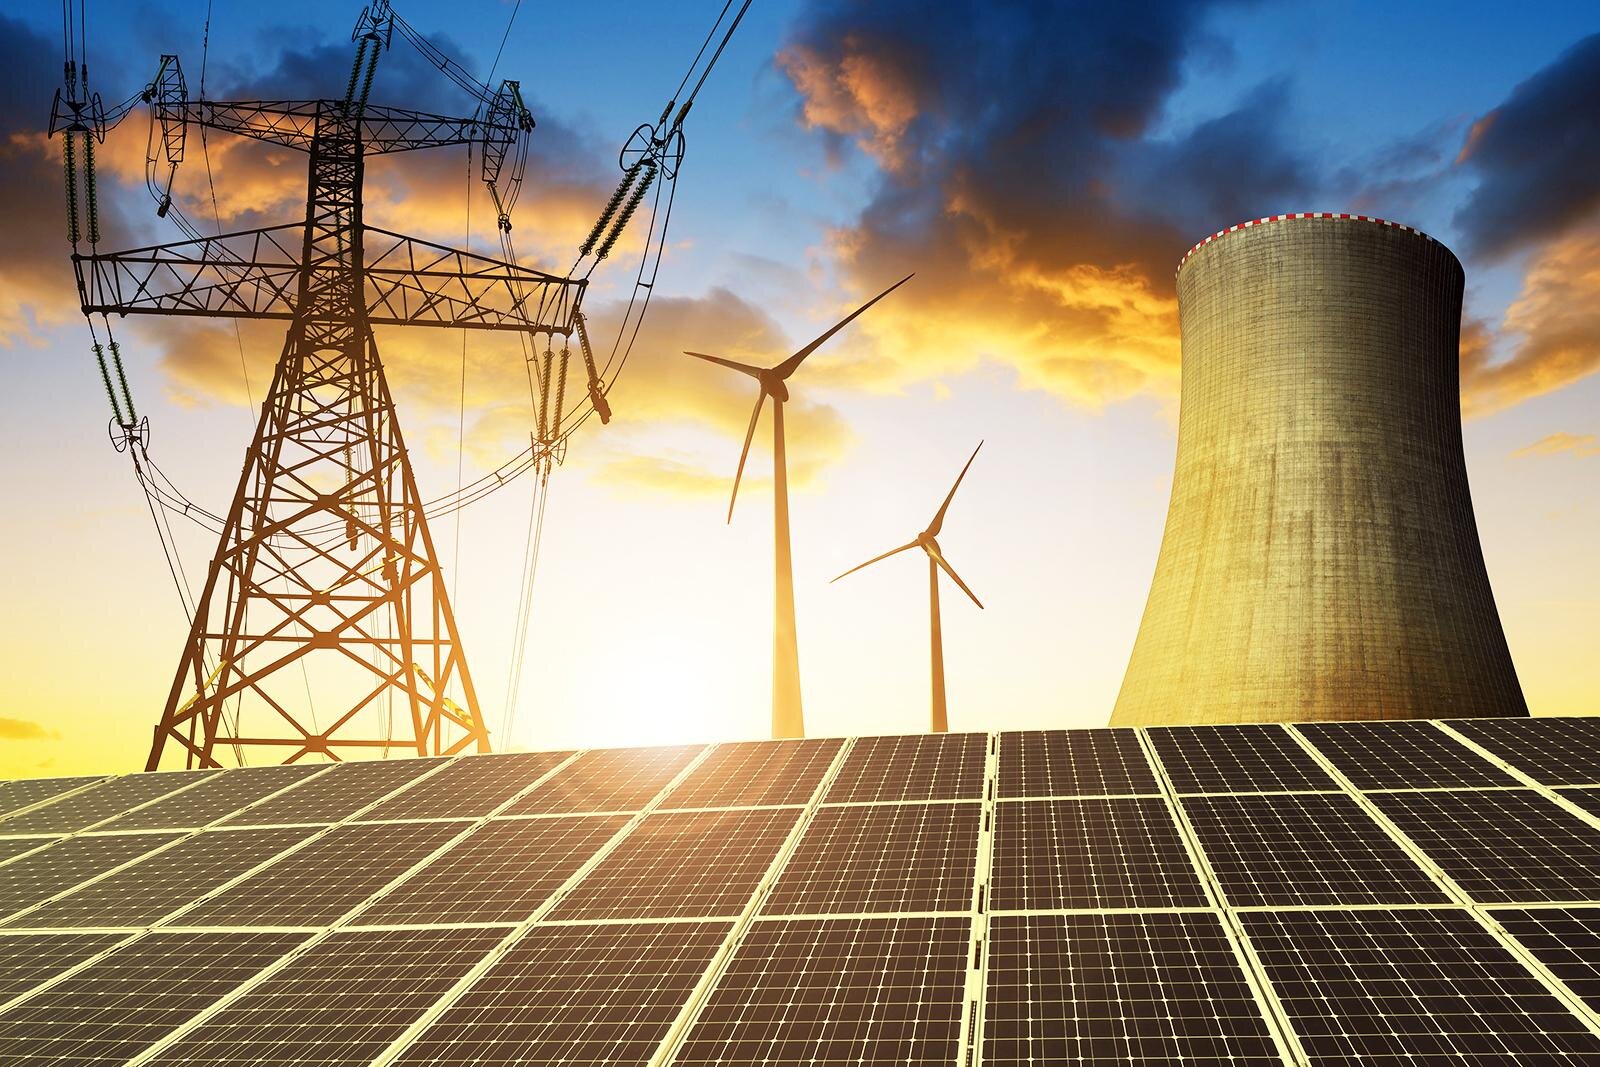 More information about "Έκθεση Κομισιόν: Γιατί οι ΑΠΕ πρωταγωνιστούν στην ηλεκτρική παραγωγή εξοβελίζοντας τα ορυκτά καύσιμα"